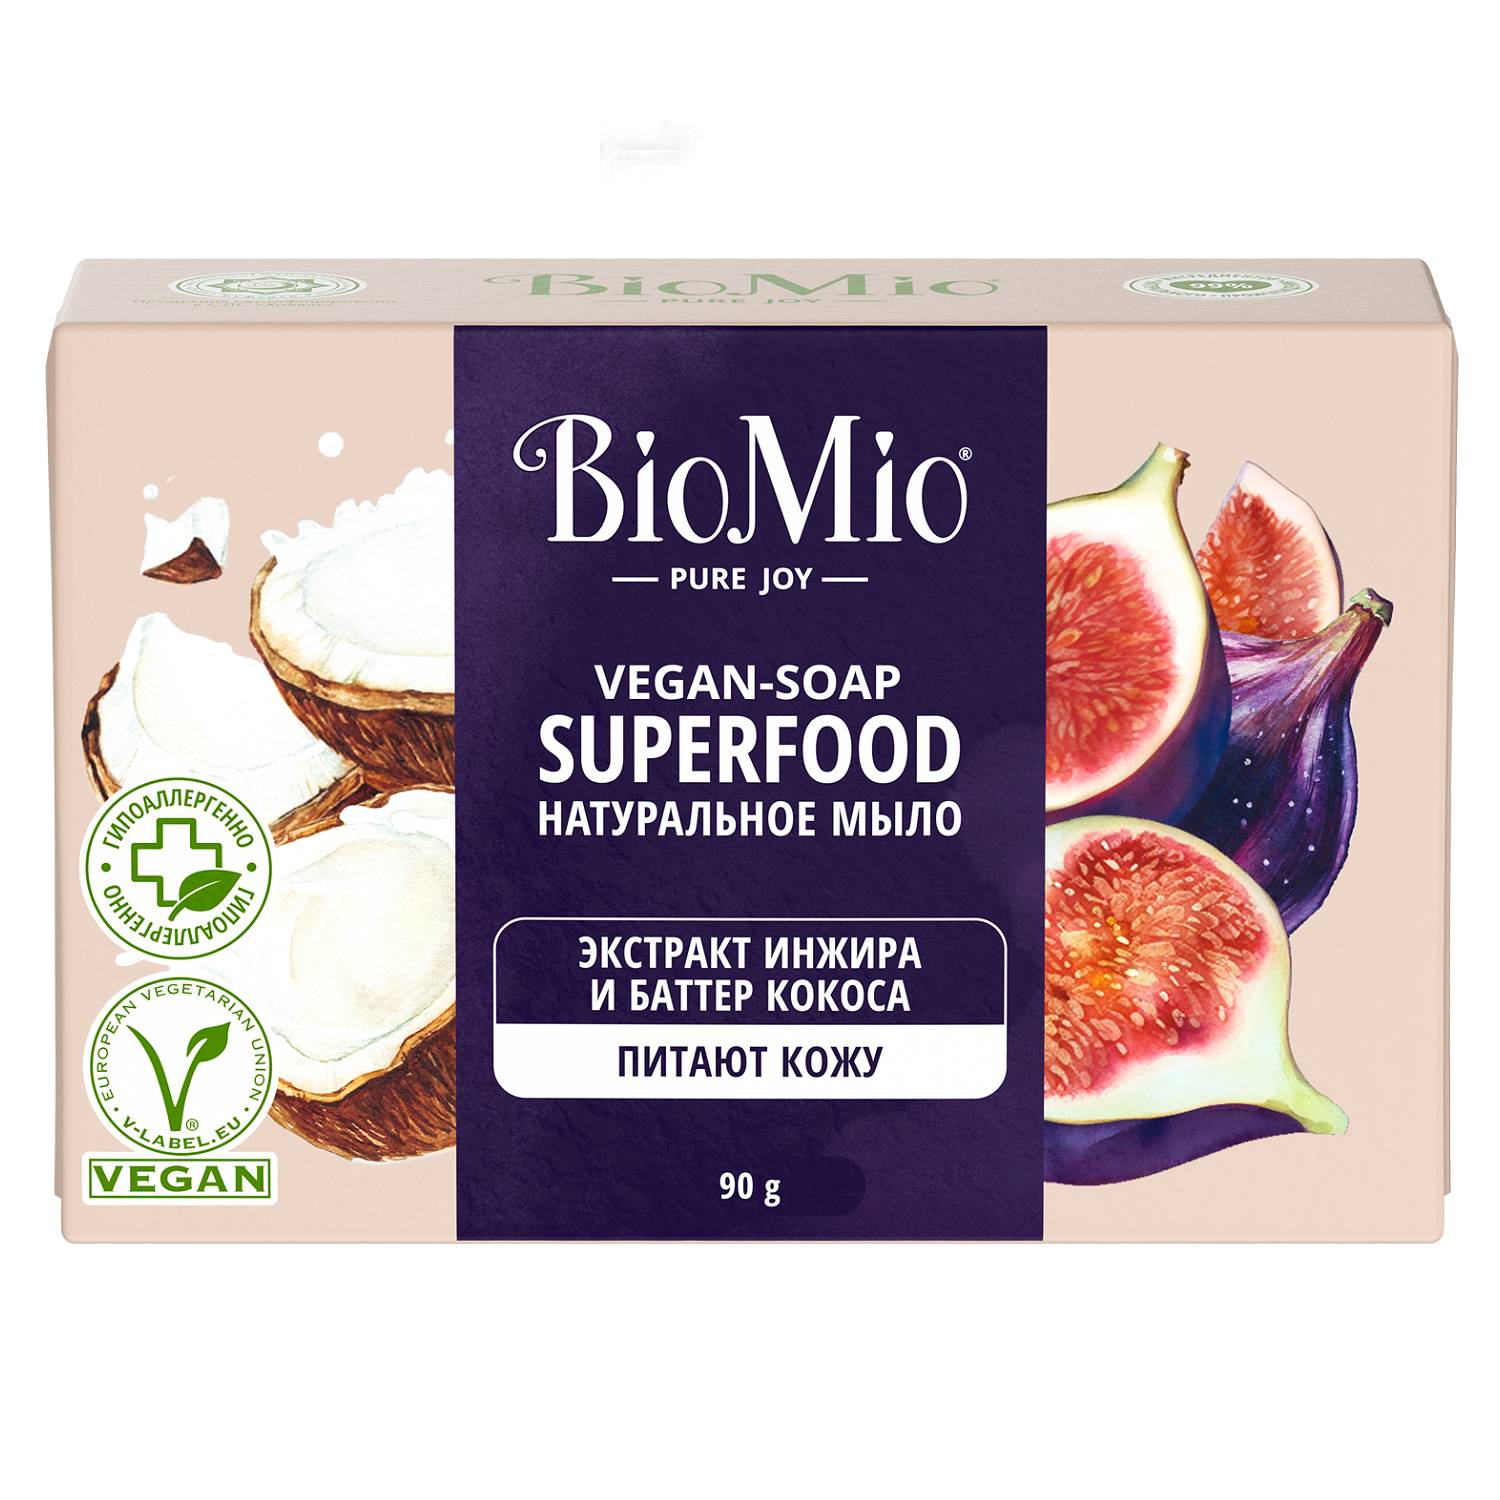 BioMio Натуральное мыло Инжир и кокос Vegan Soap Superfood, 90 г (BioMio, Мыло) мыло biomio экстракт инжира и баттер кокоса 90г